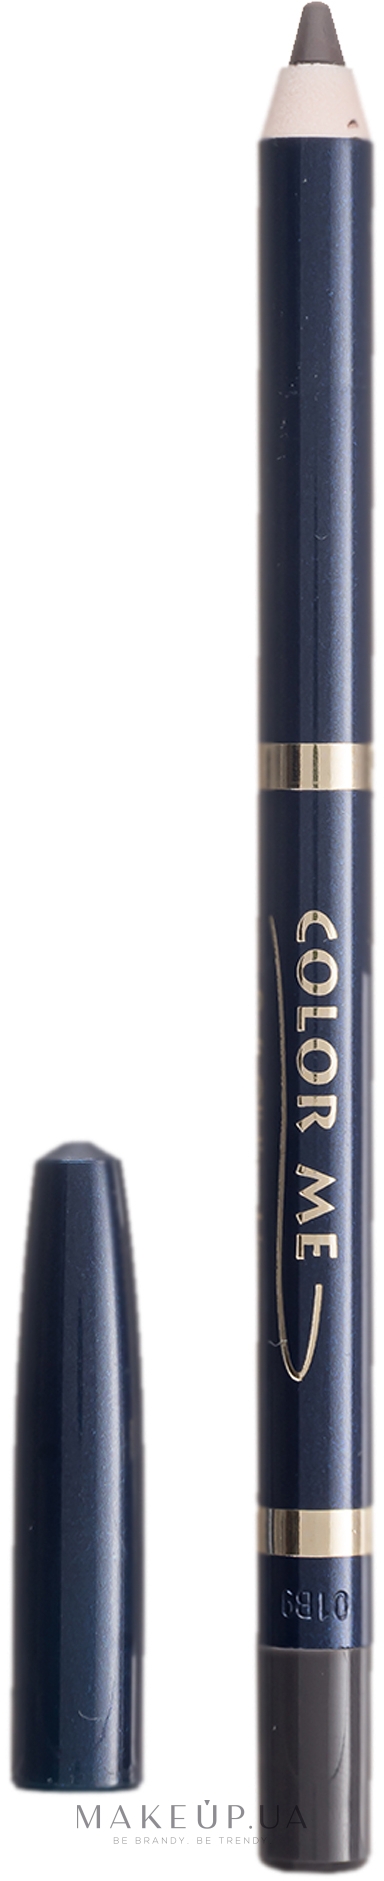 Олівець для очей і брів на основі силікону - Color Me Soft Gliding Liner for Eyes and Brow Waterproof - Colorstay — фото N10